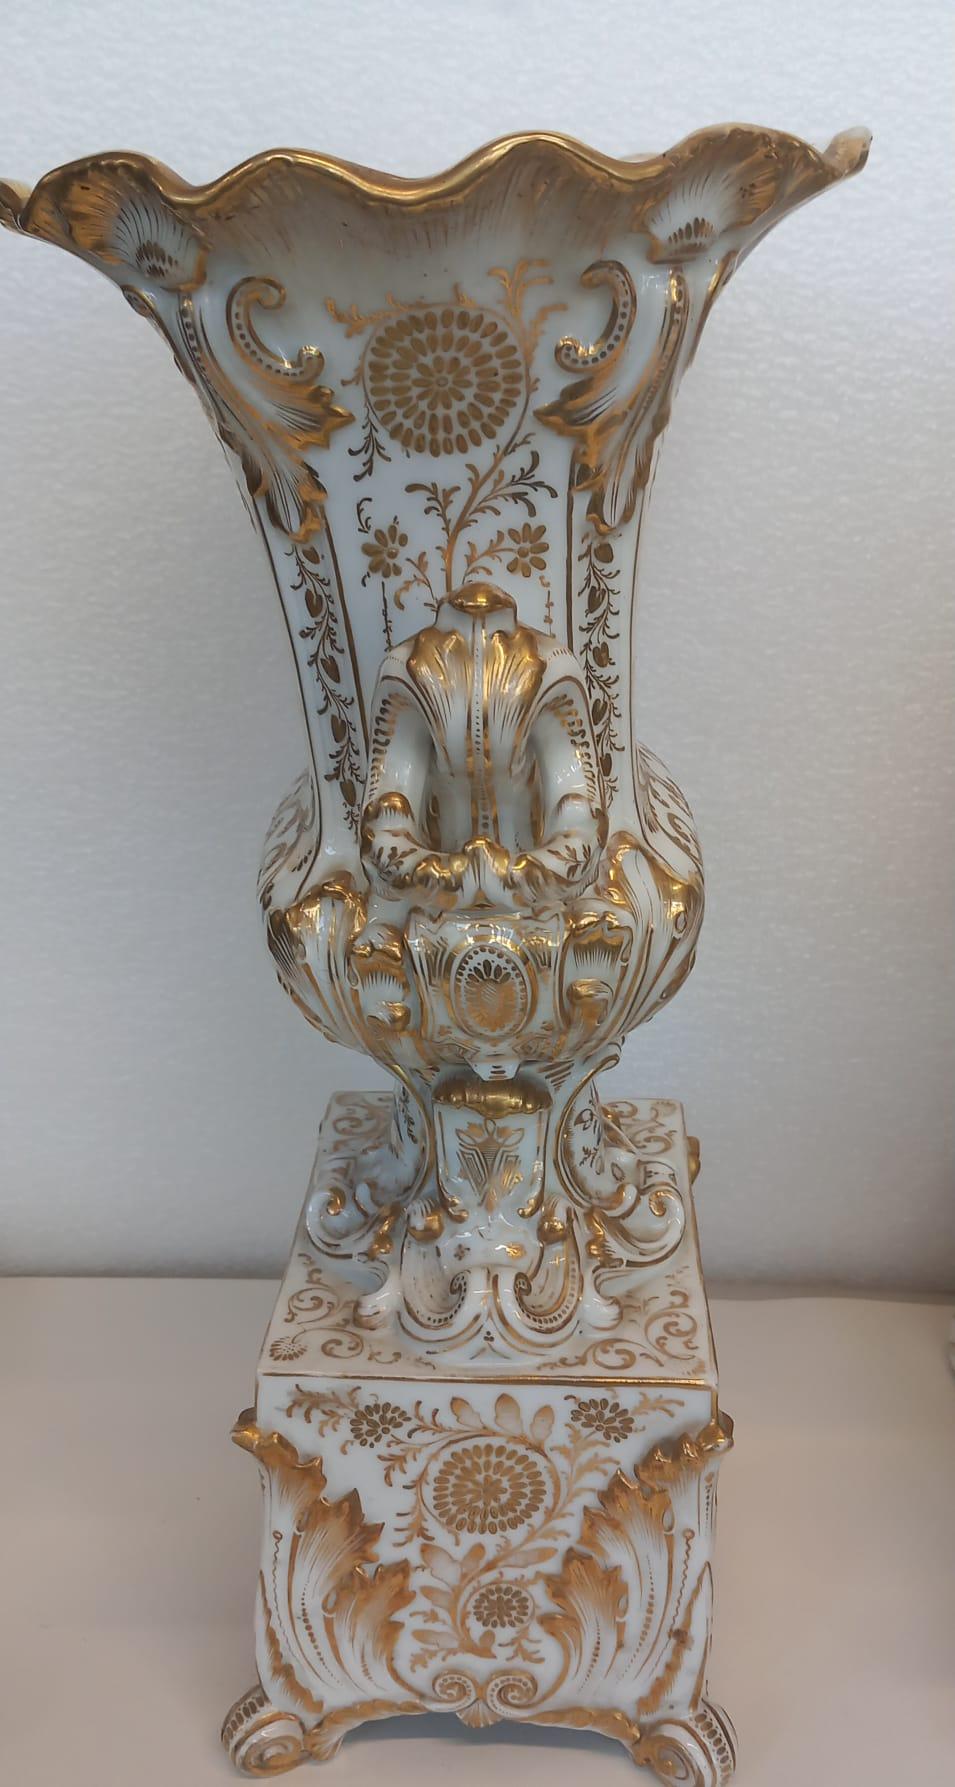 Eine elegante Kaminuhr mit den dazugehörigen Vasen, hergestellt in Paris um 1860. Ganz im Stil von Jacob Petit und höchstwahrscheinlich aus seiner Manufaktur stammend, ist jedes Stück kunstvoll vergoldet und mit Blumenkartuschen handbemalt.
Die